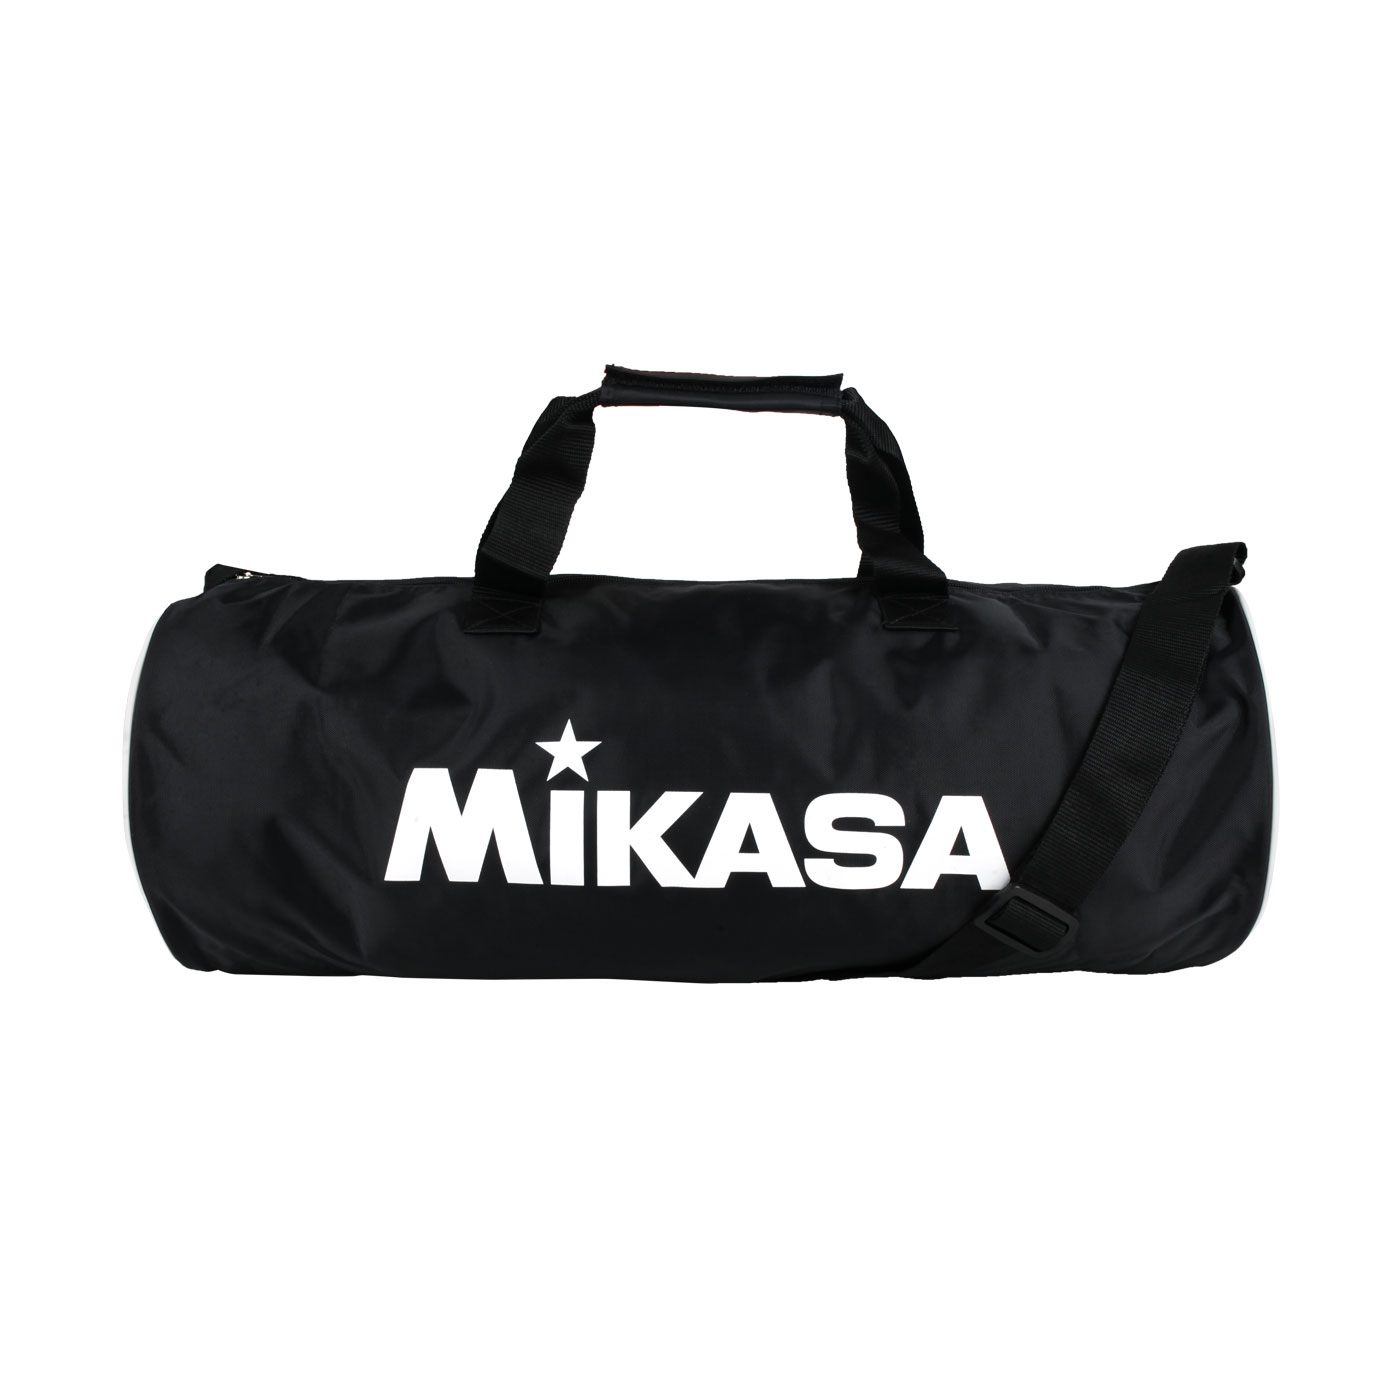 MIKASA 排球袋(3顆裝) MKB226513